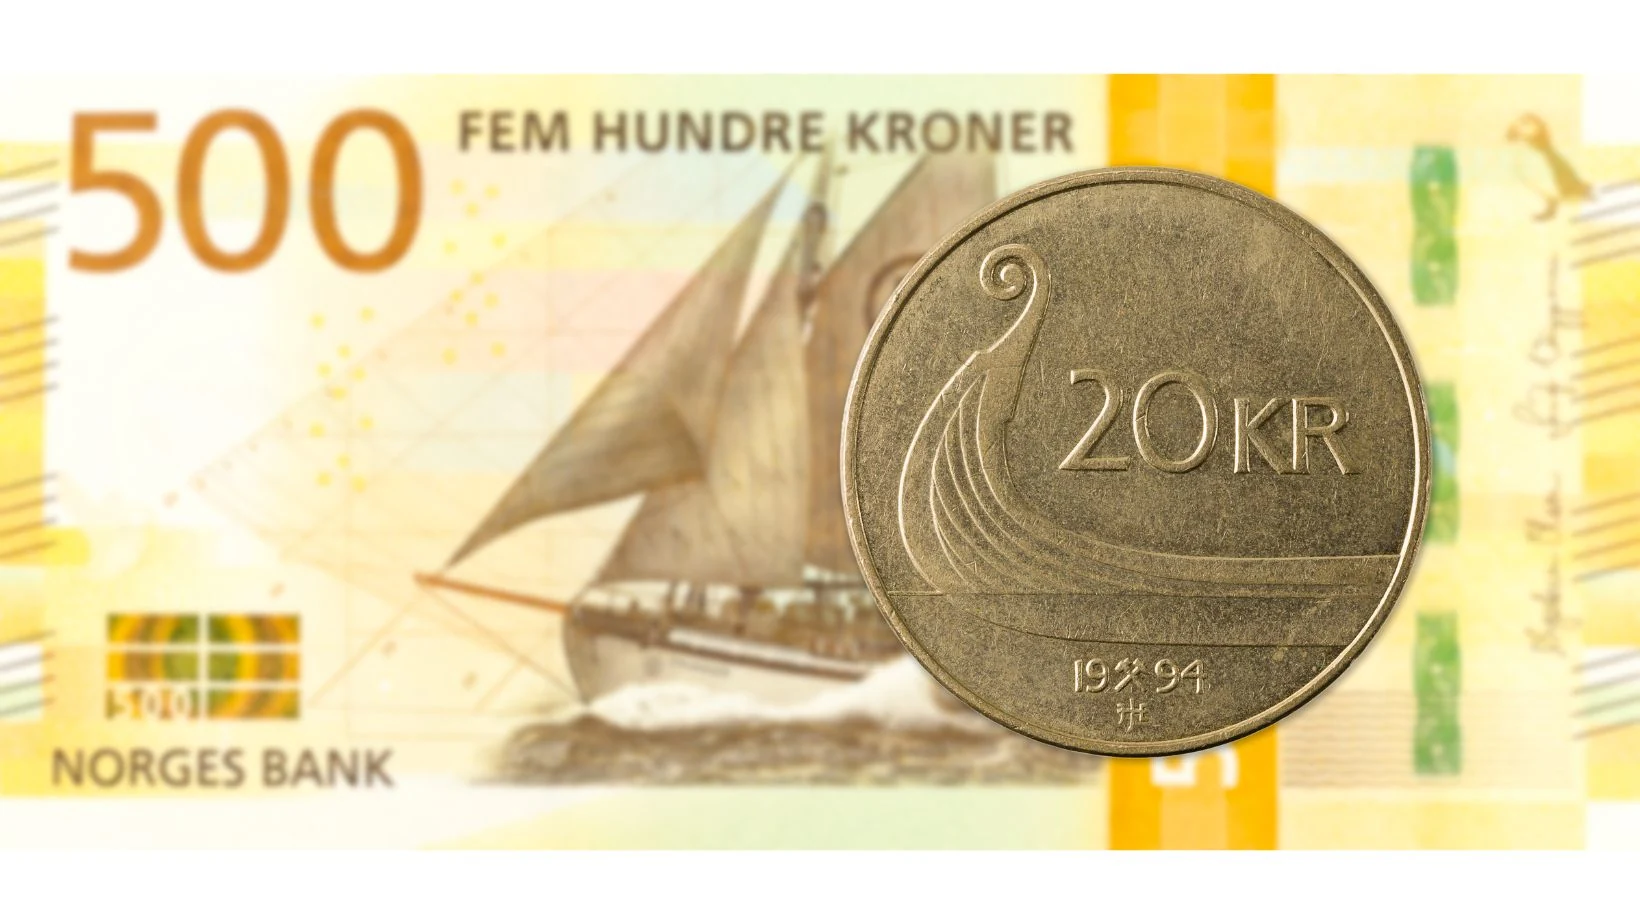 500 挪威克朗纸币和 20 挪威克朗硬币